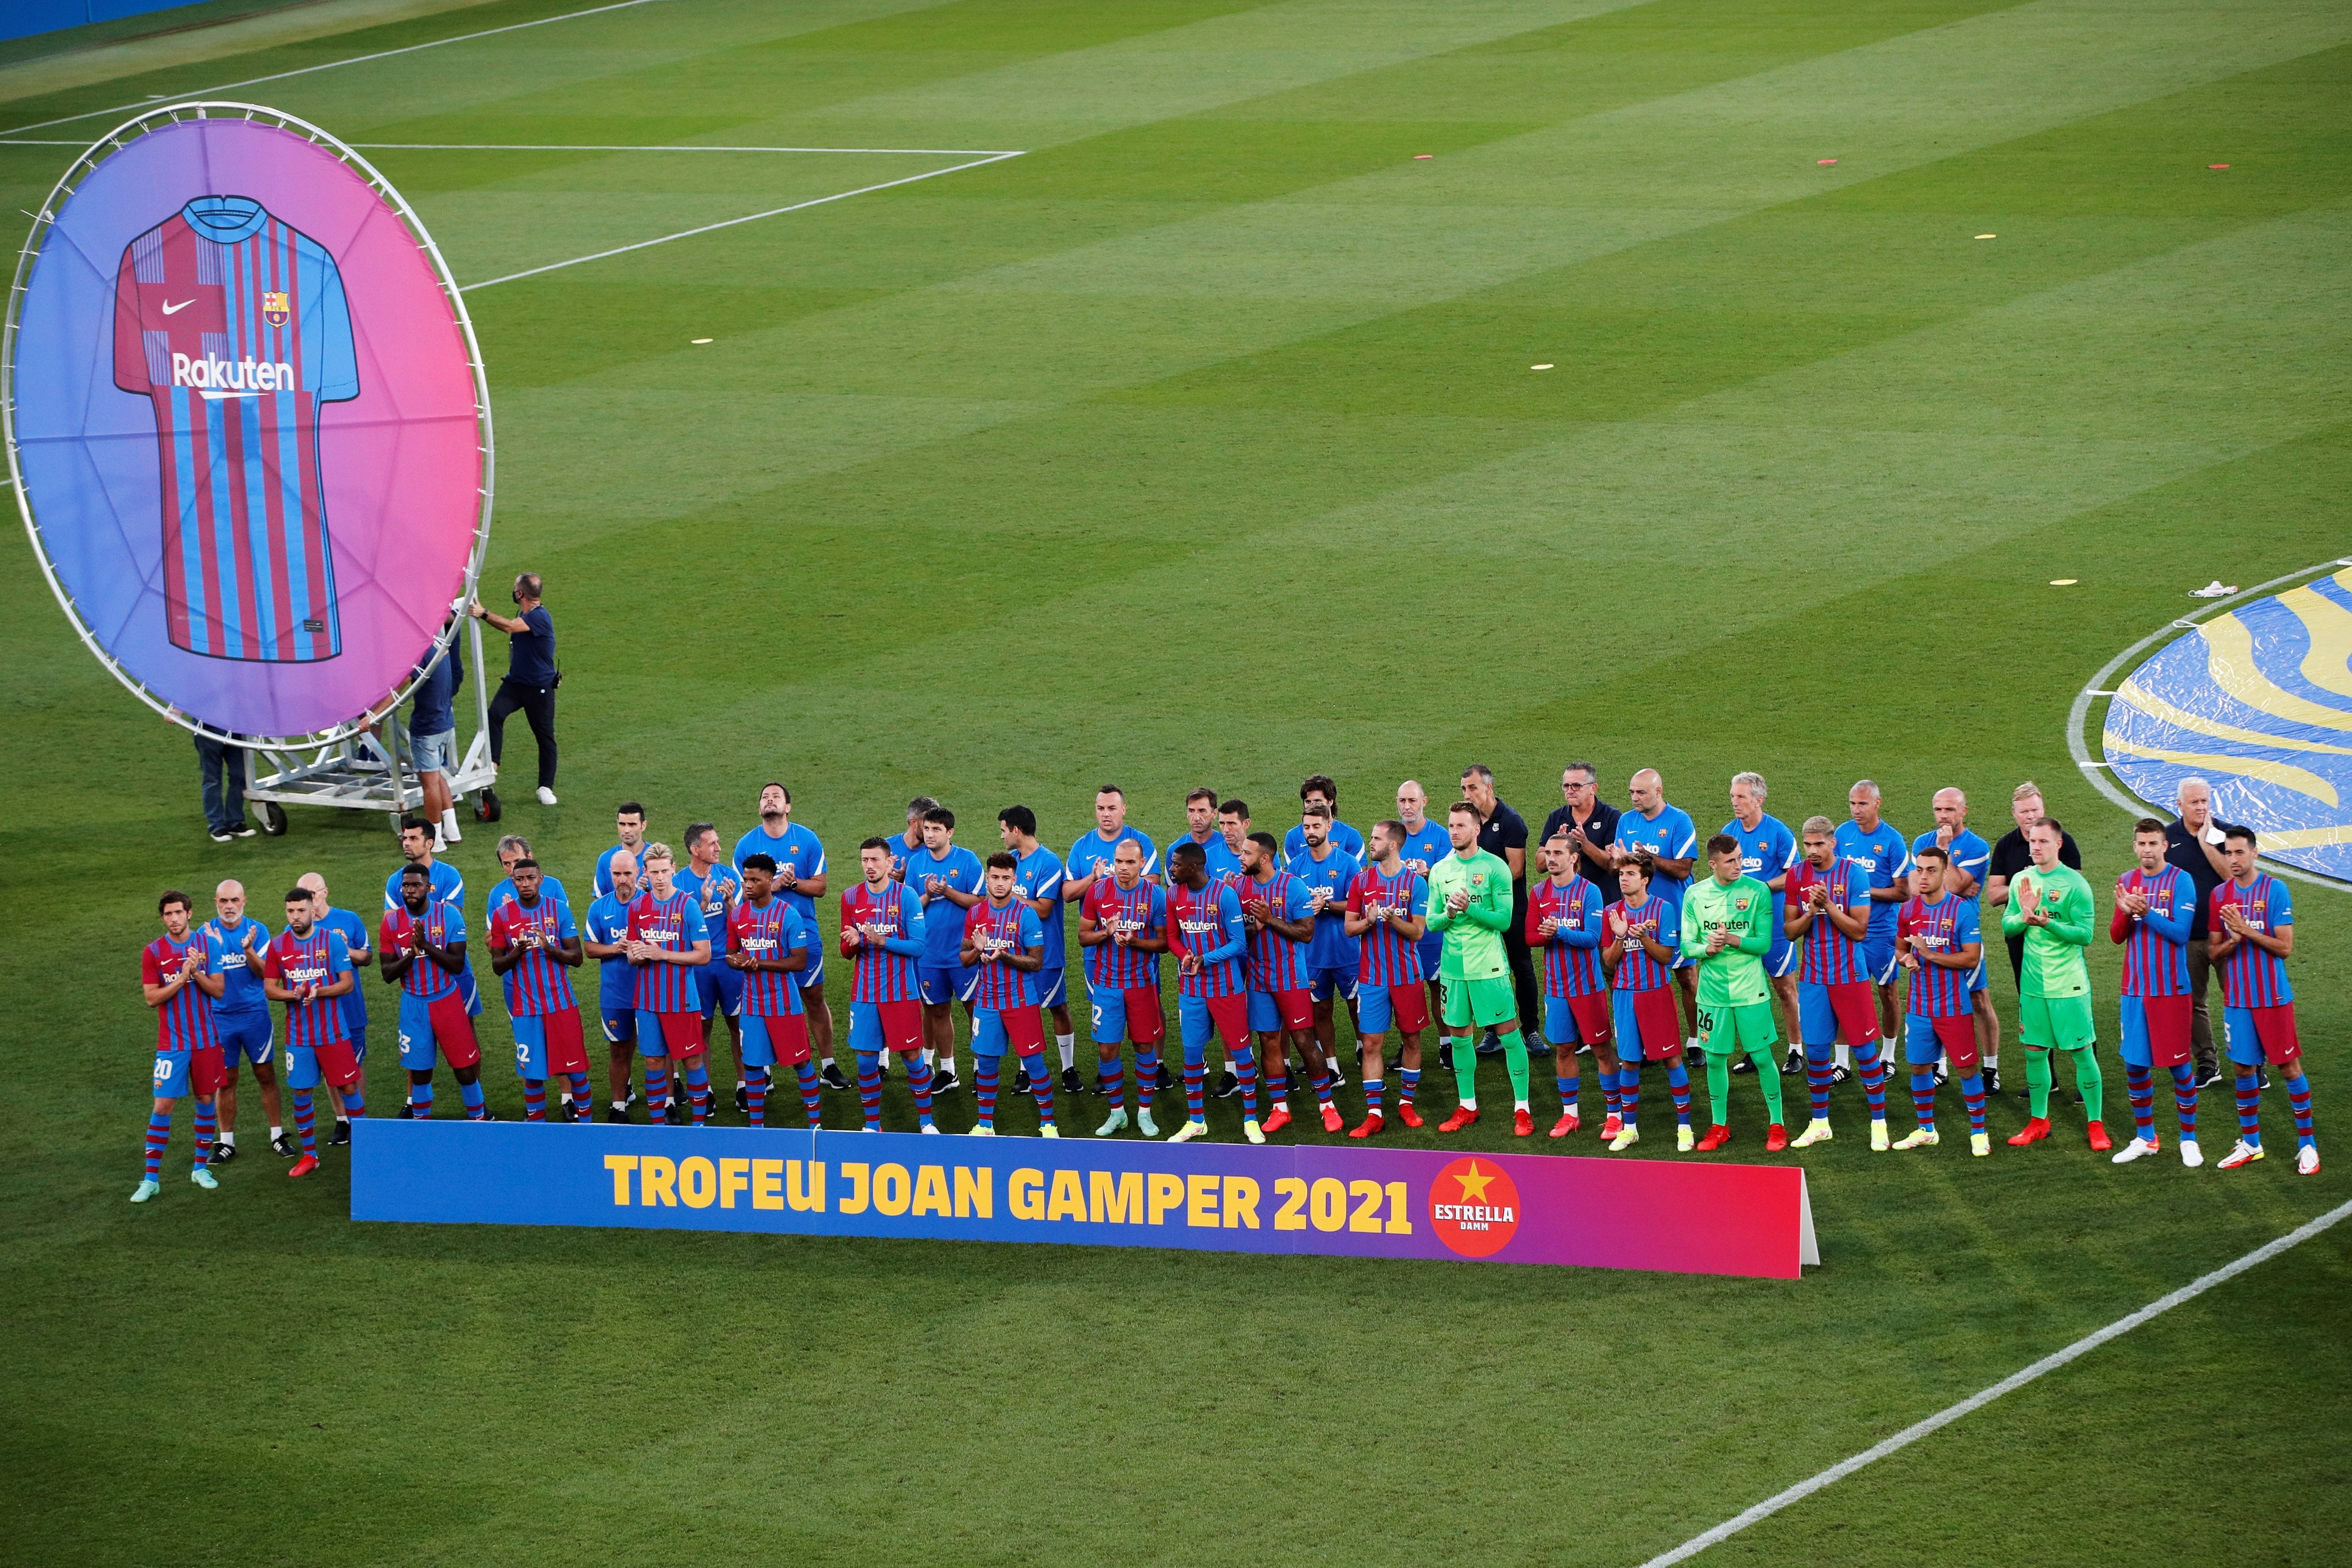 El Barça anuncia el doble rival para el Trofeo Joan Gamper más especial